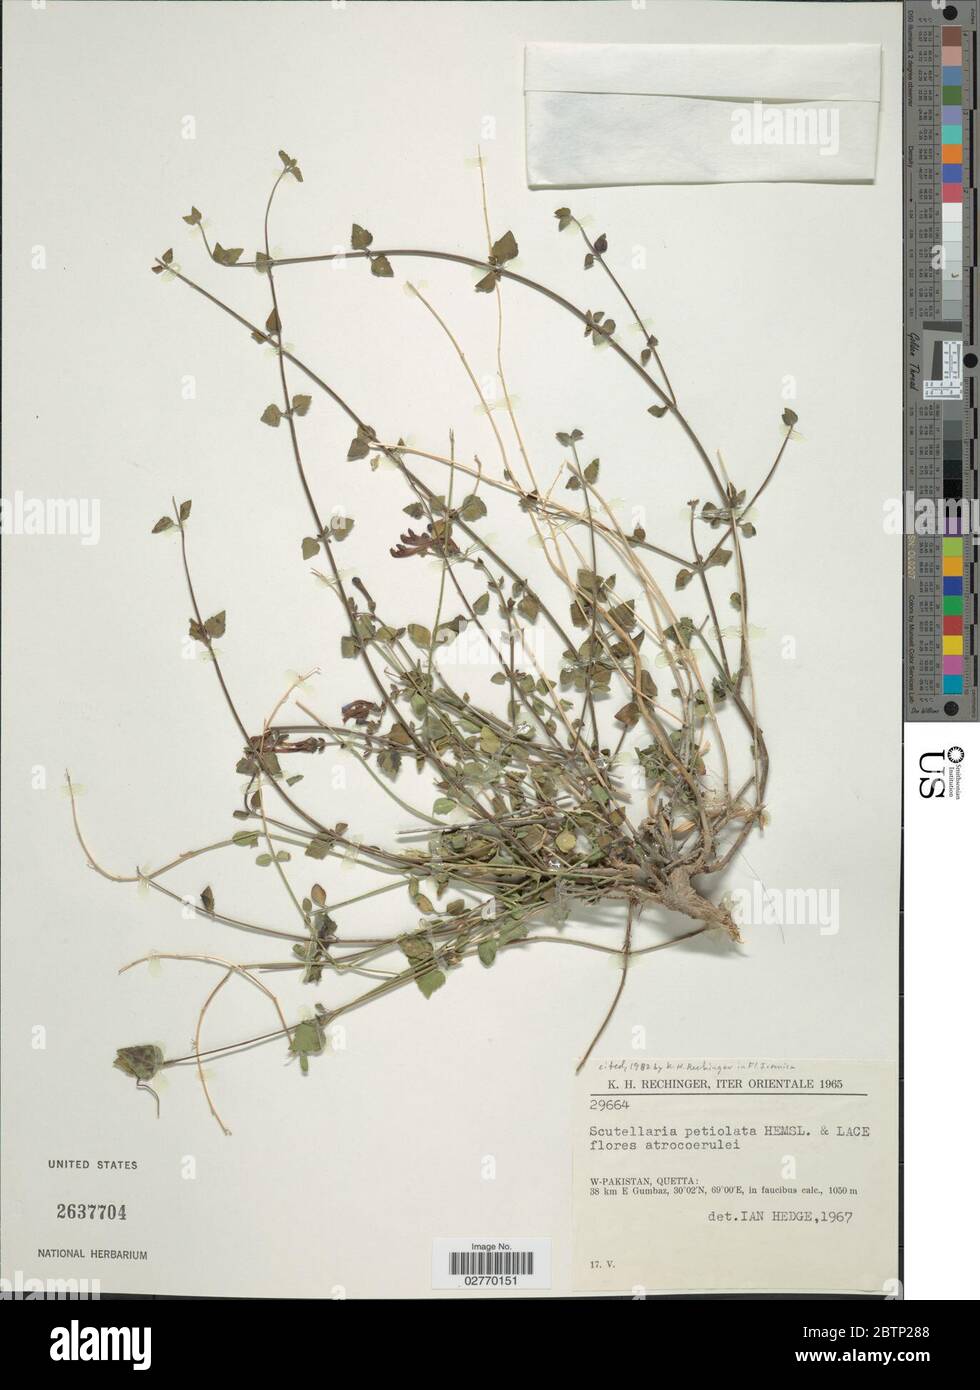 Scutellaria petiolata Hemsl ex Lace Prain. Stock Photo